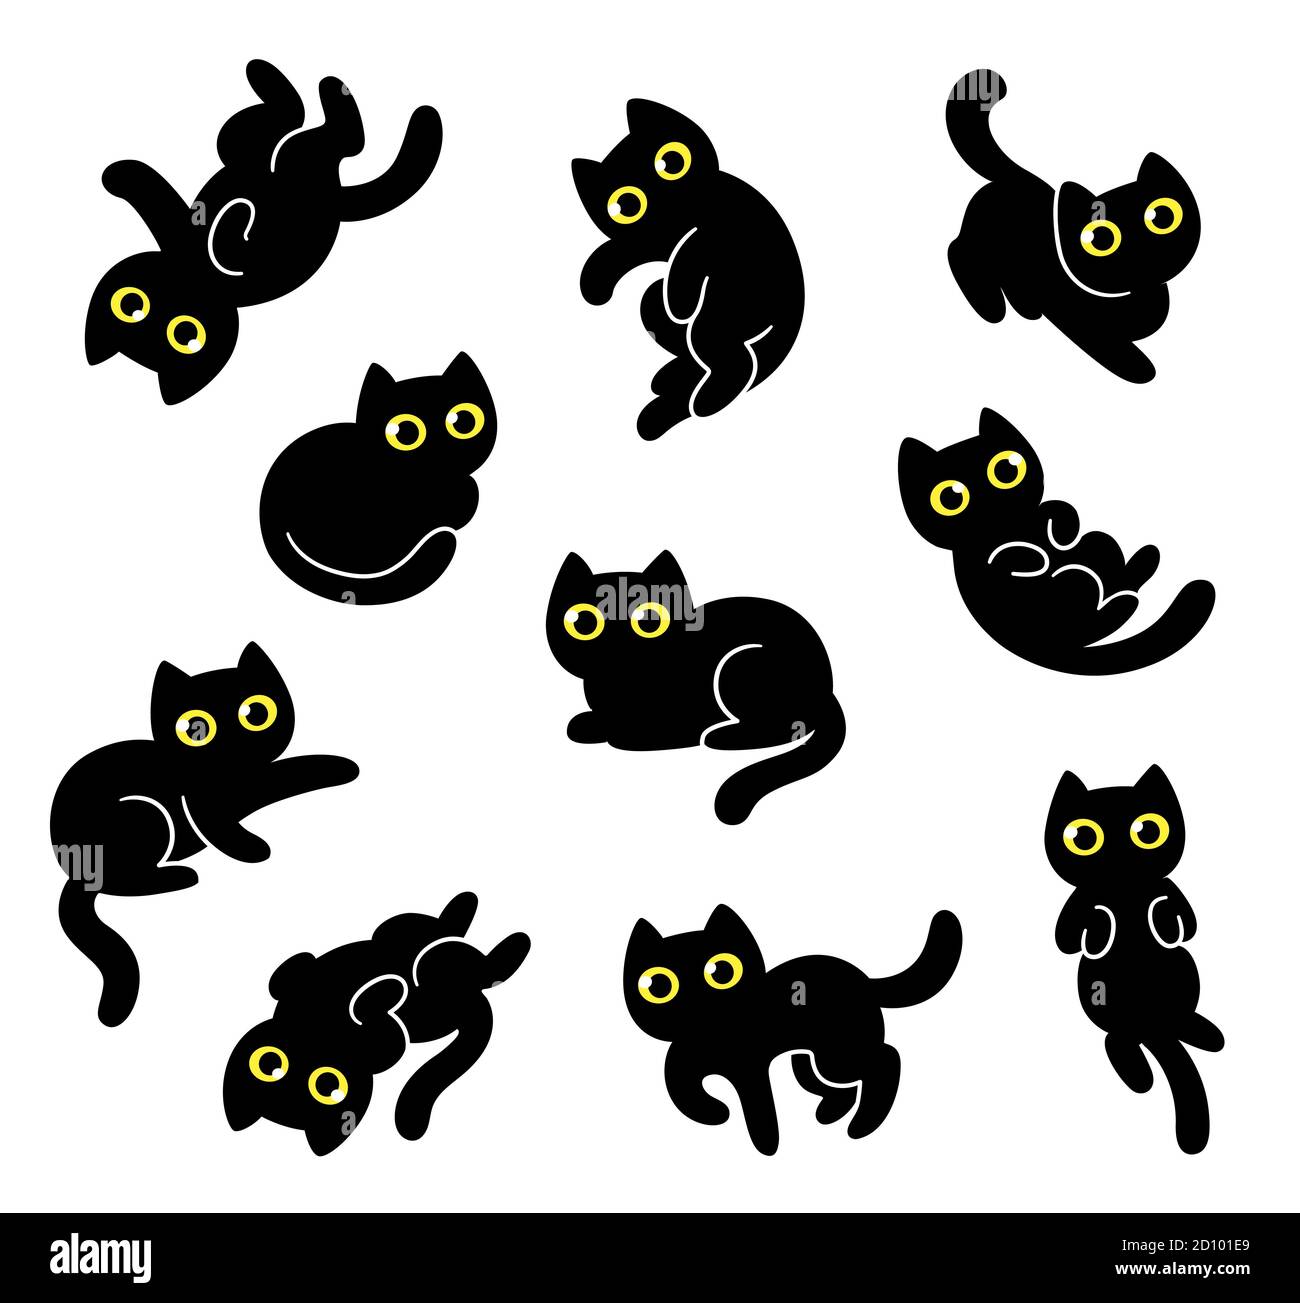 Ensemble de dessin mignon chat noir de dessin animé. Des gribouillages de chatons dessinés à la main dans différentes poses. Illustration simple de clip art vectoriel de style kawaii. Illustration de Vecteur